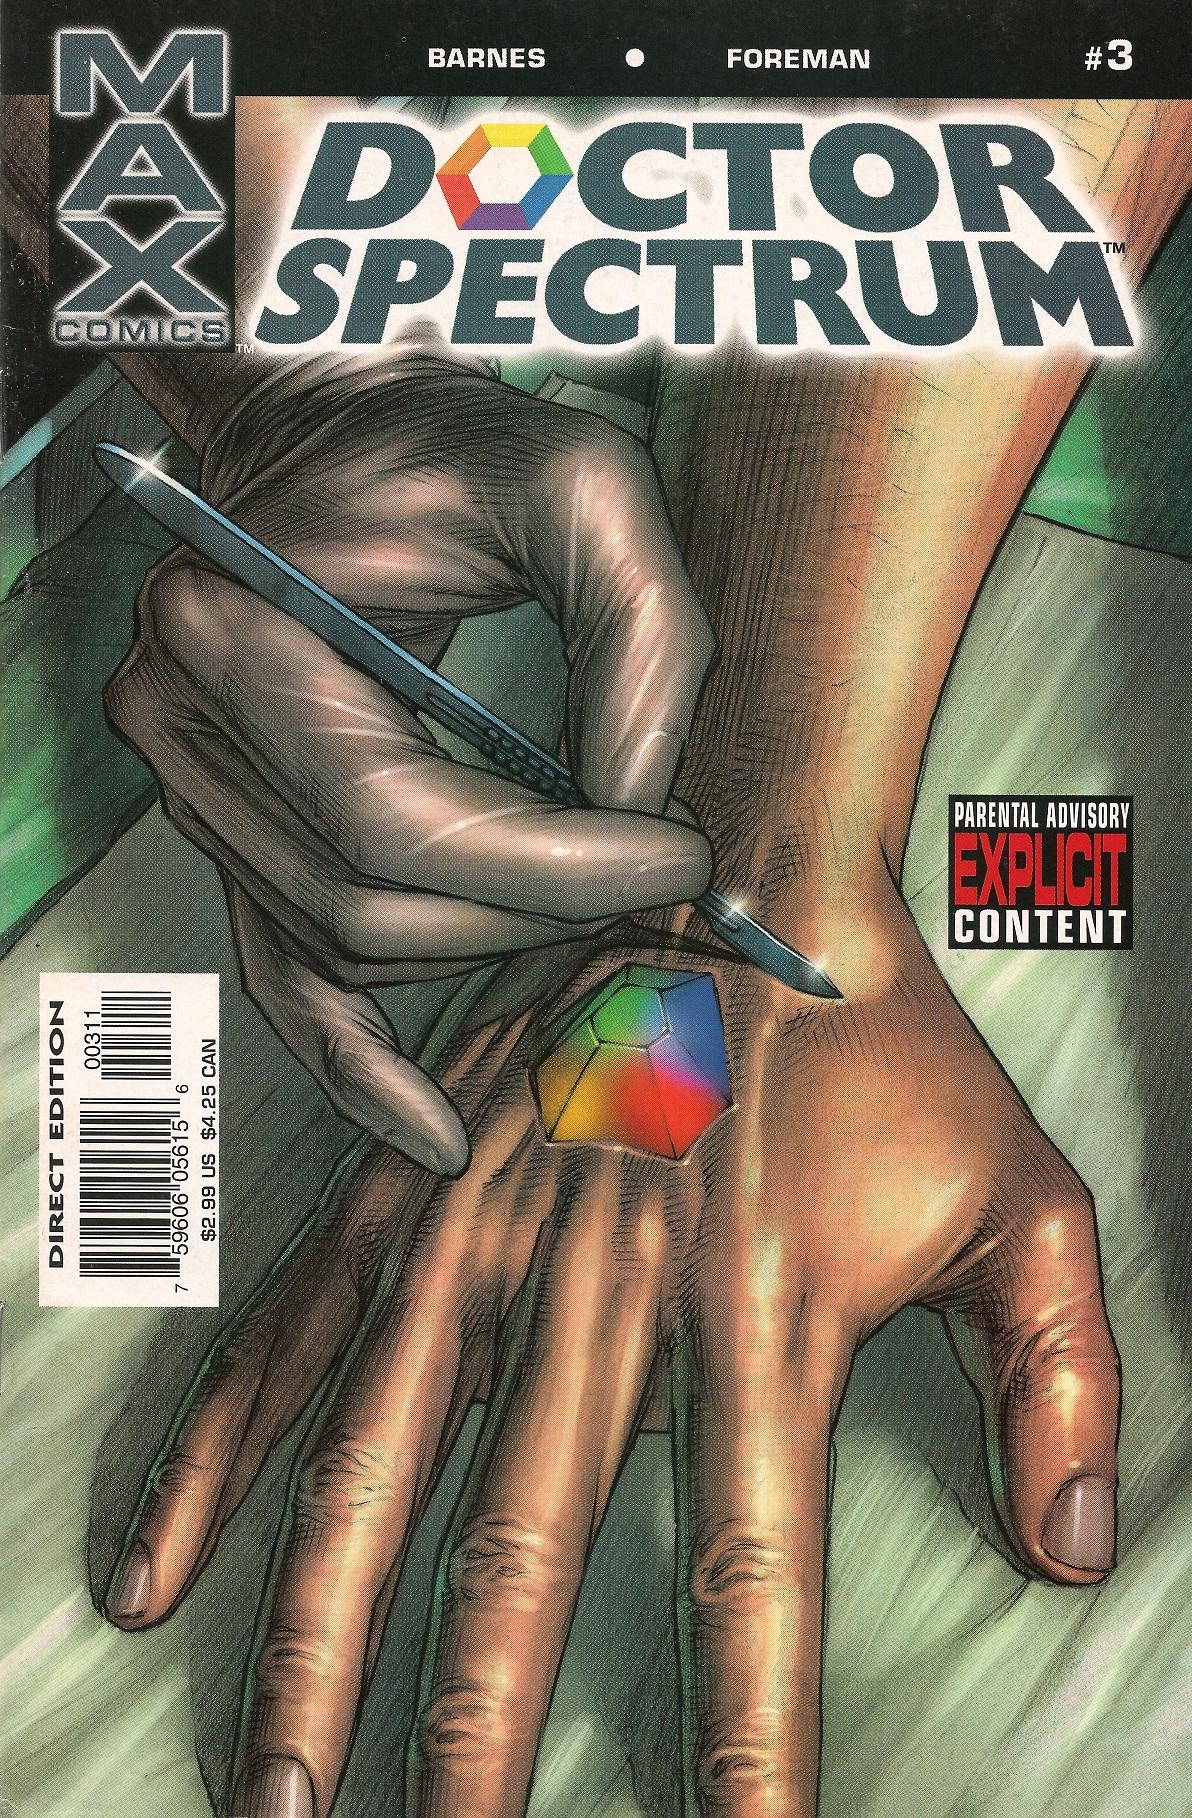 Doctor Spectrum Vol. 1 #3